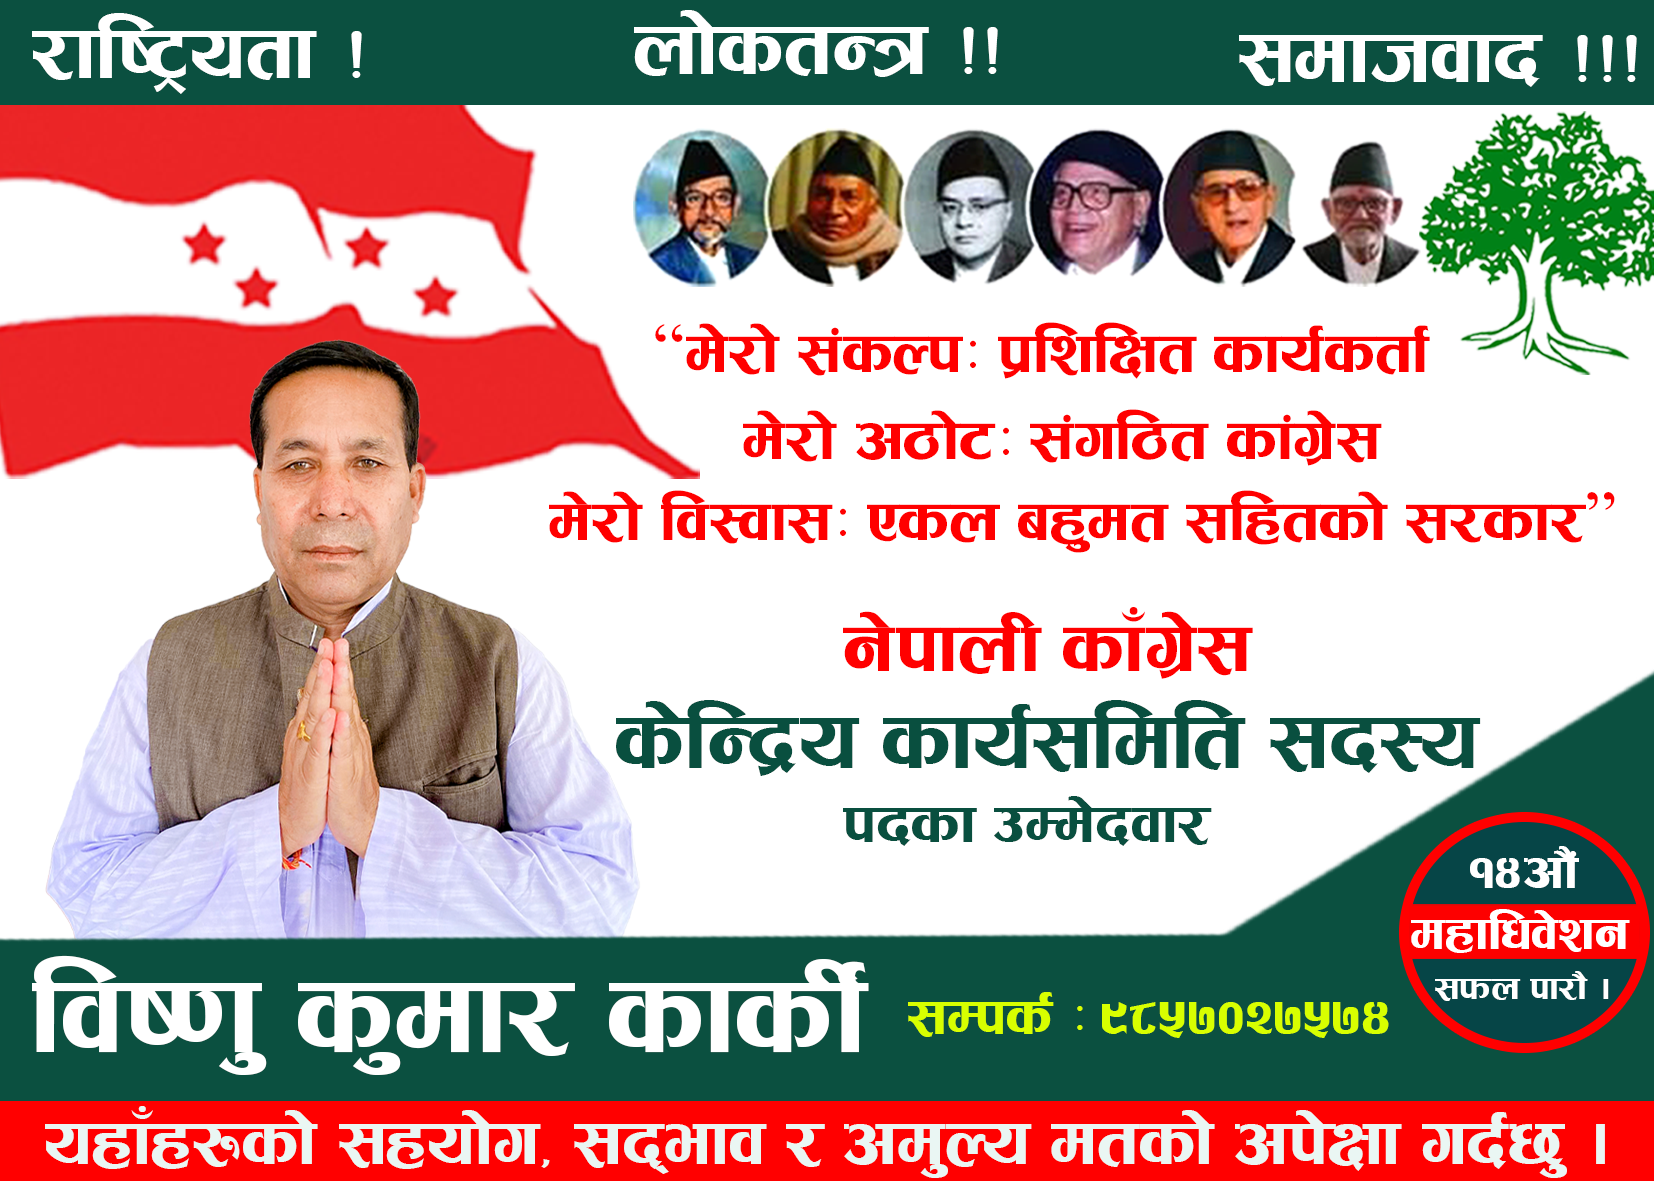 नेपाली कांग्रेसका नेता विष्णुकुमार कार्कीले केन्द्रिय सदस्यमा उम्मेदवारी दिने